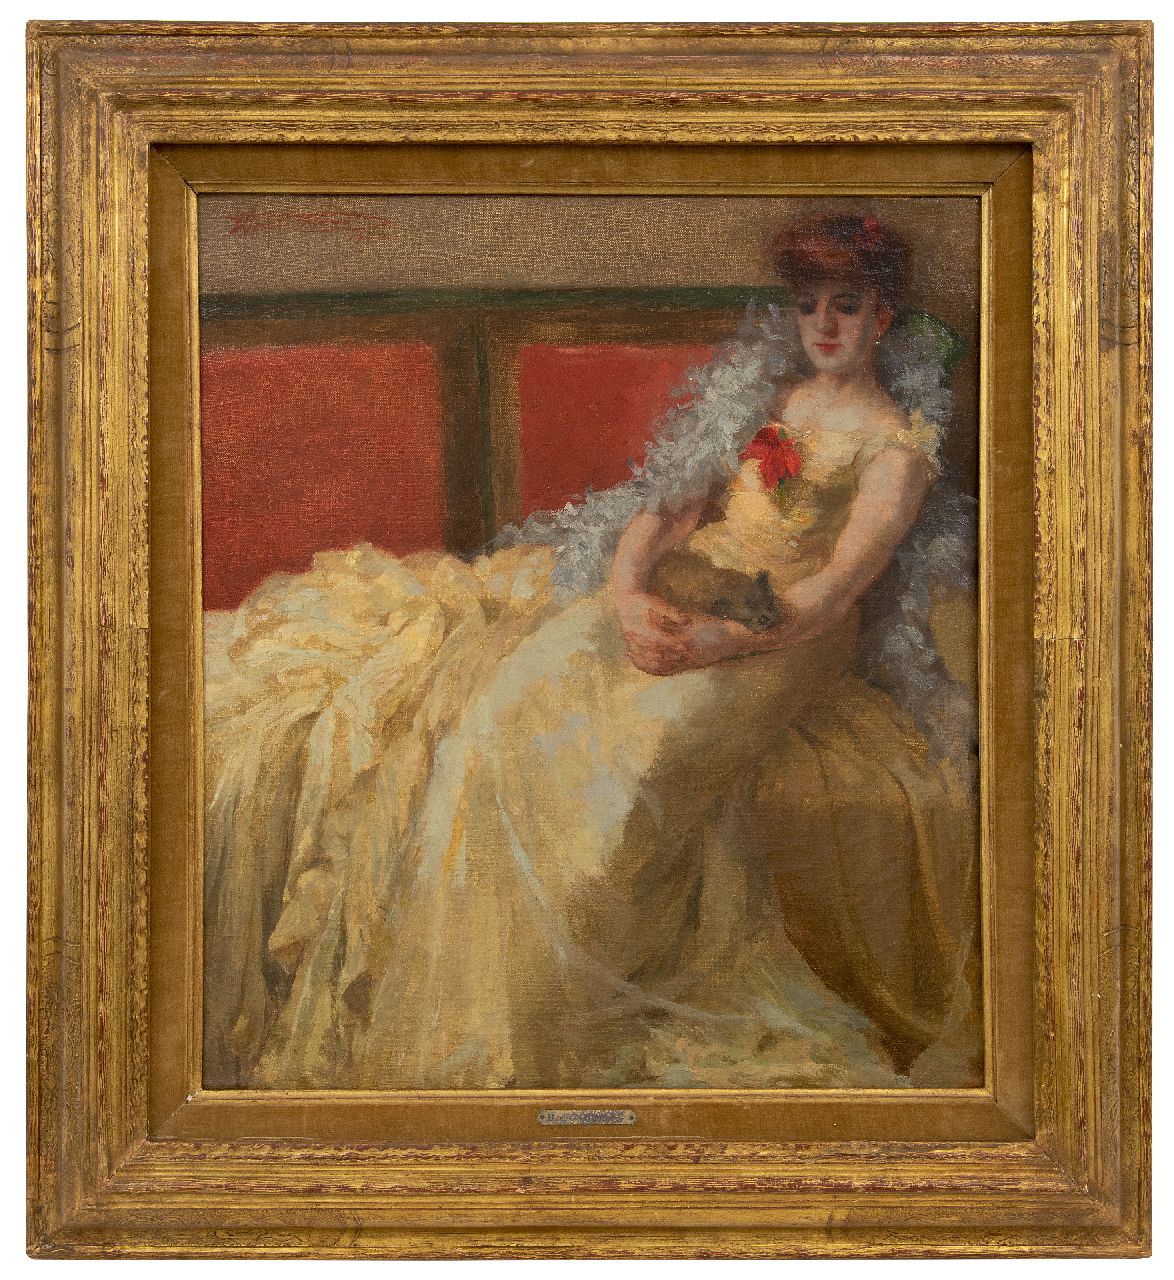 Thomas H.J.  | Henri Joseph Thomas | Schilderijen te koop aangeboden | Vrouw in baljurk met schoothondje, olieverf op doek 56,9 x 50,5 cm, gesigneerd linksboven en gedateerd 1924